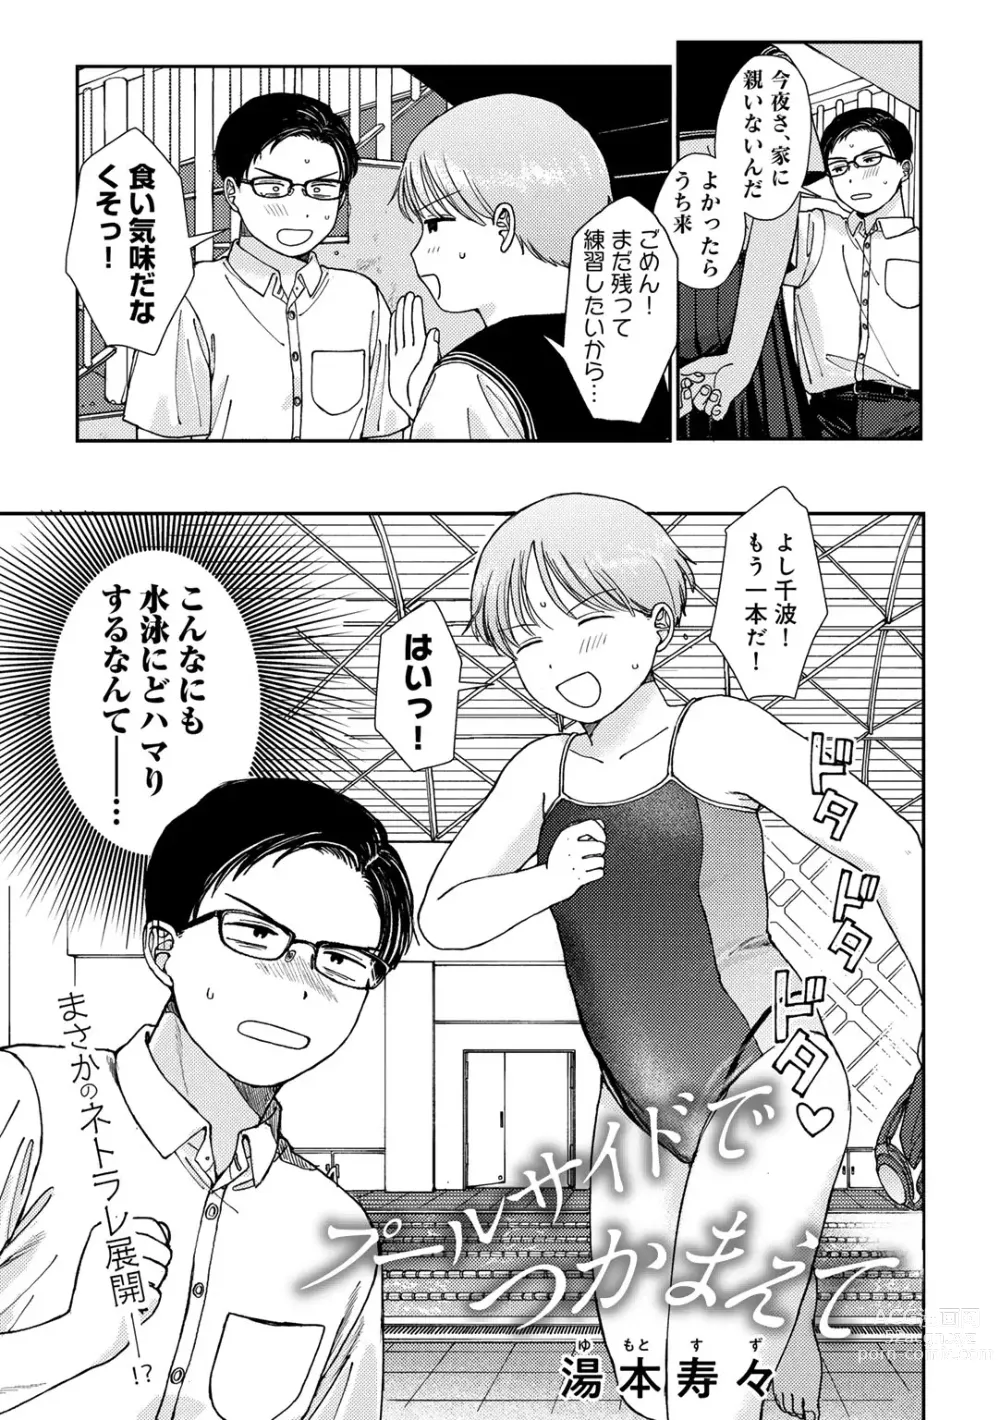 Page 5 of manga COMIC kisshug vol.4